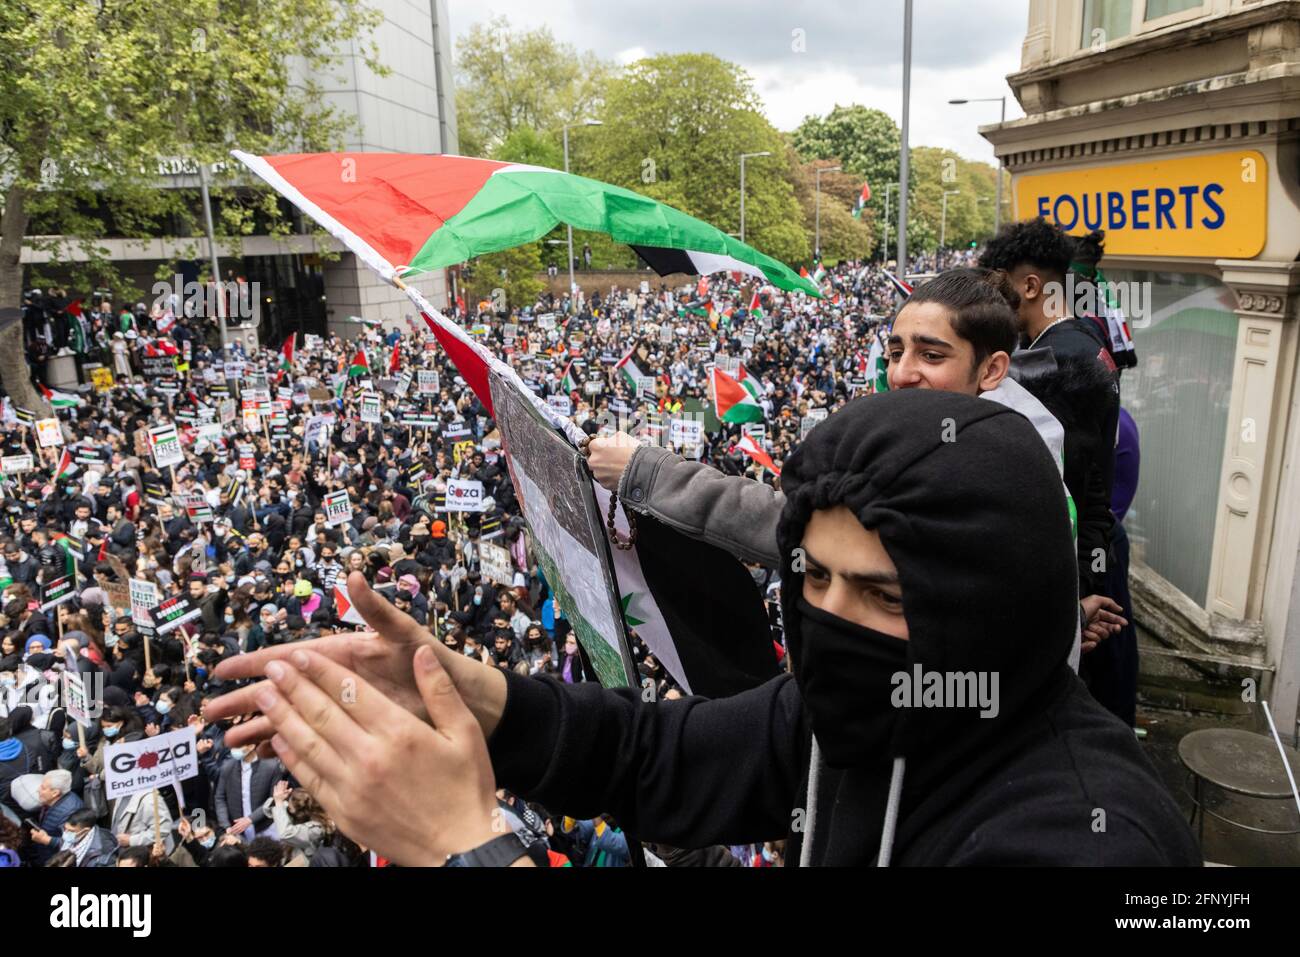 Les manifestants applaudissent et brandissent les drapeaux sur la foule, manifestation de solidarité « Palestine libre », Londres, 15 mai 2021 Banque D'Images